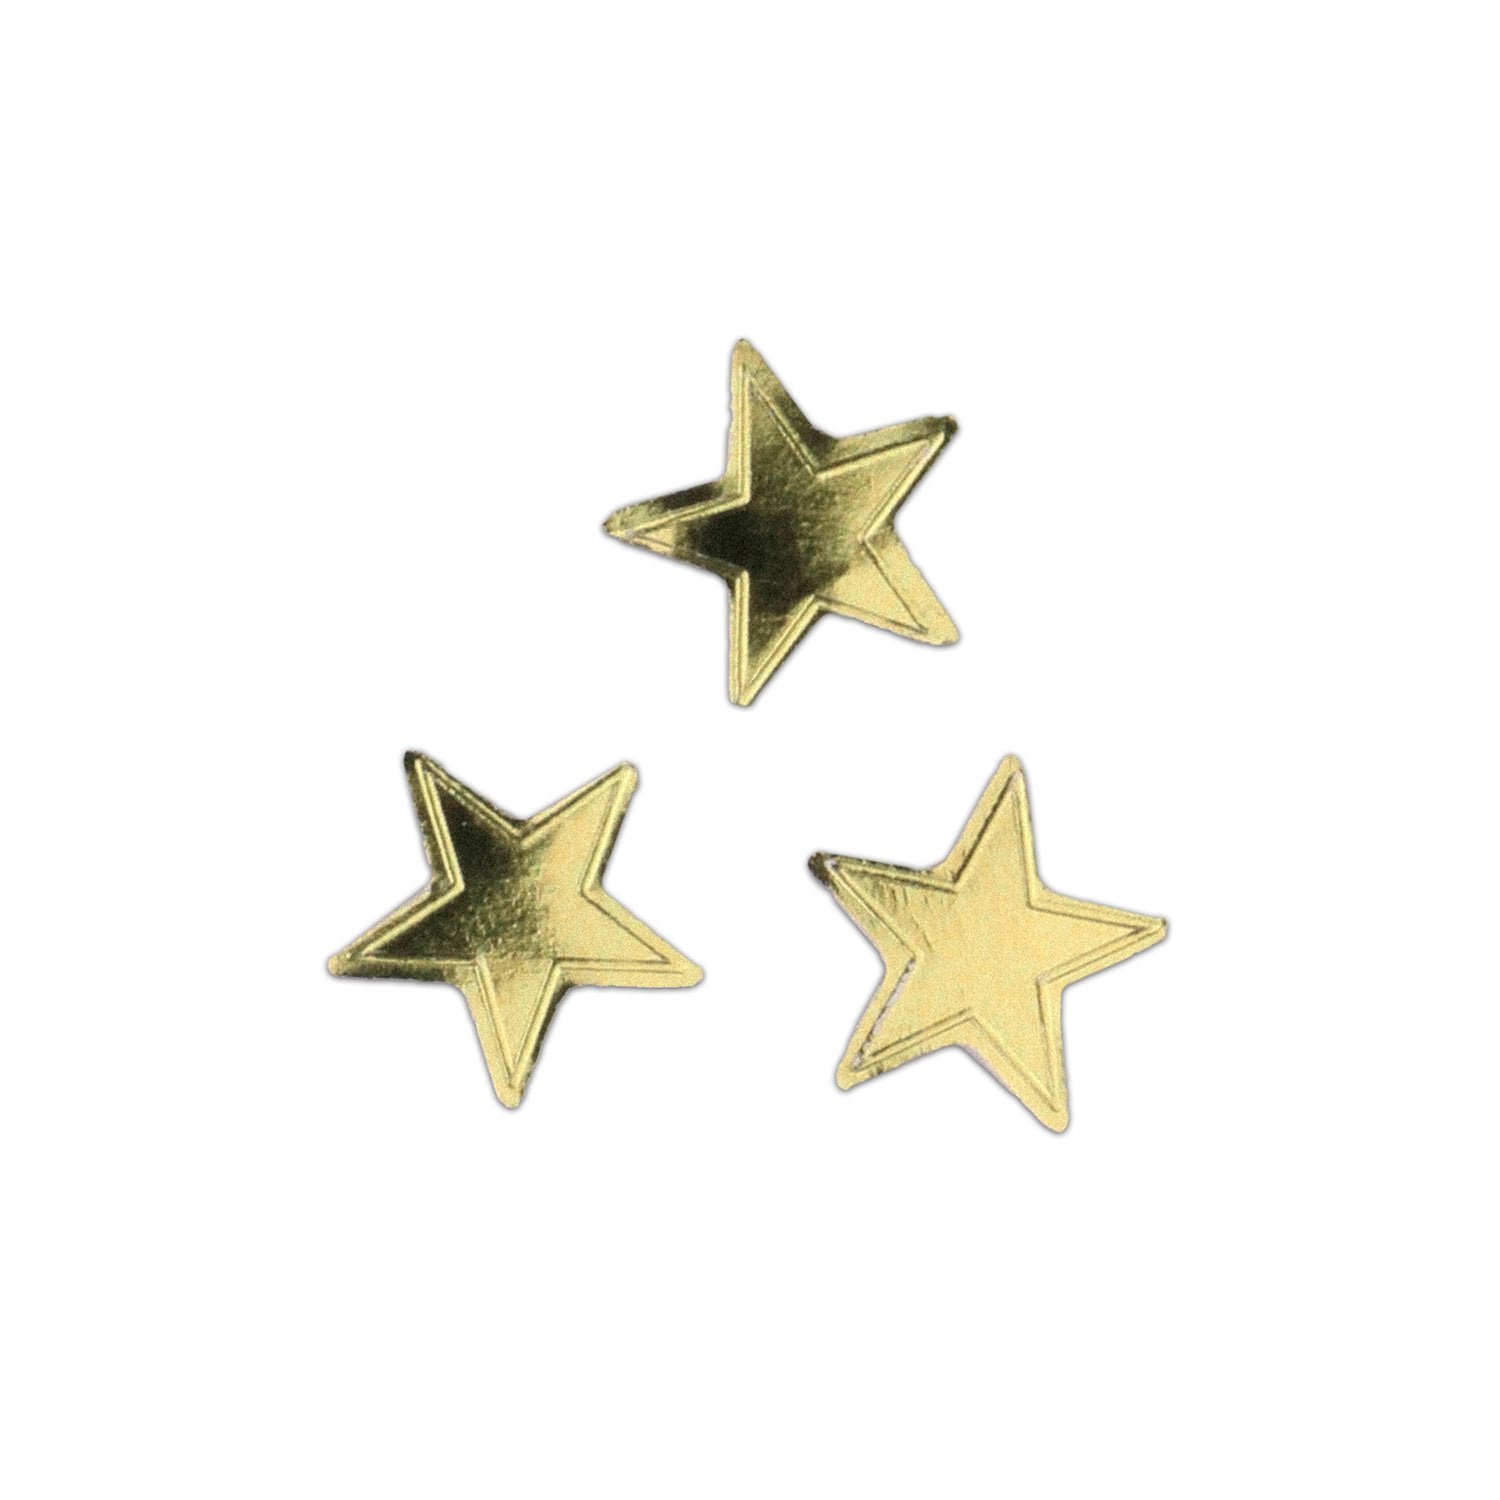 Sticker Gold star 